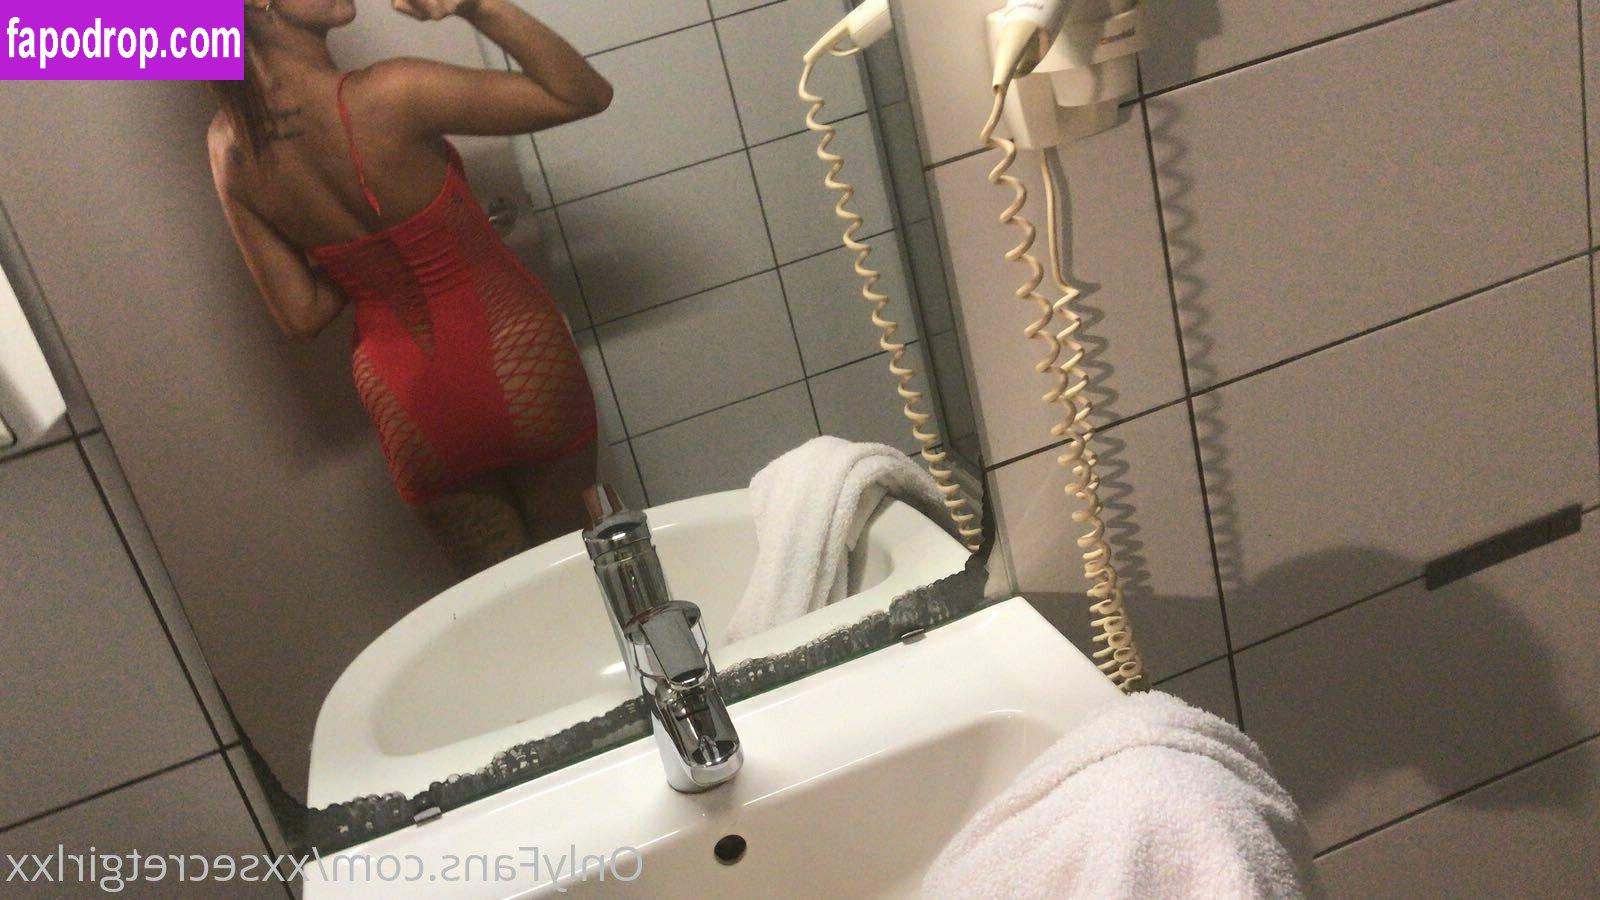 sarissakoldenhof / xxsarissaxx leak of nude photo #0039 from OnlyFans or Patreon